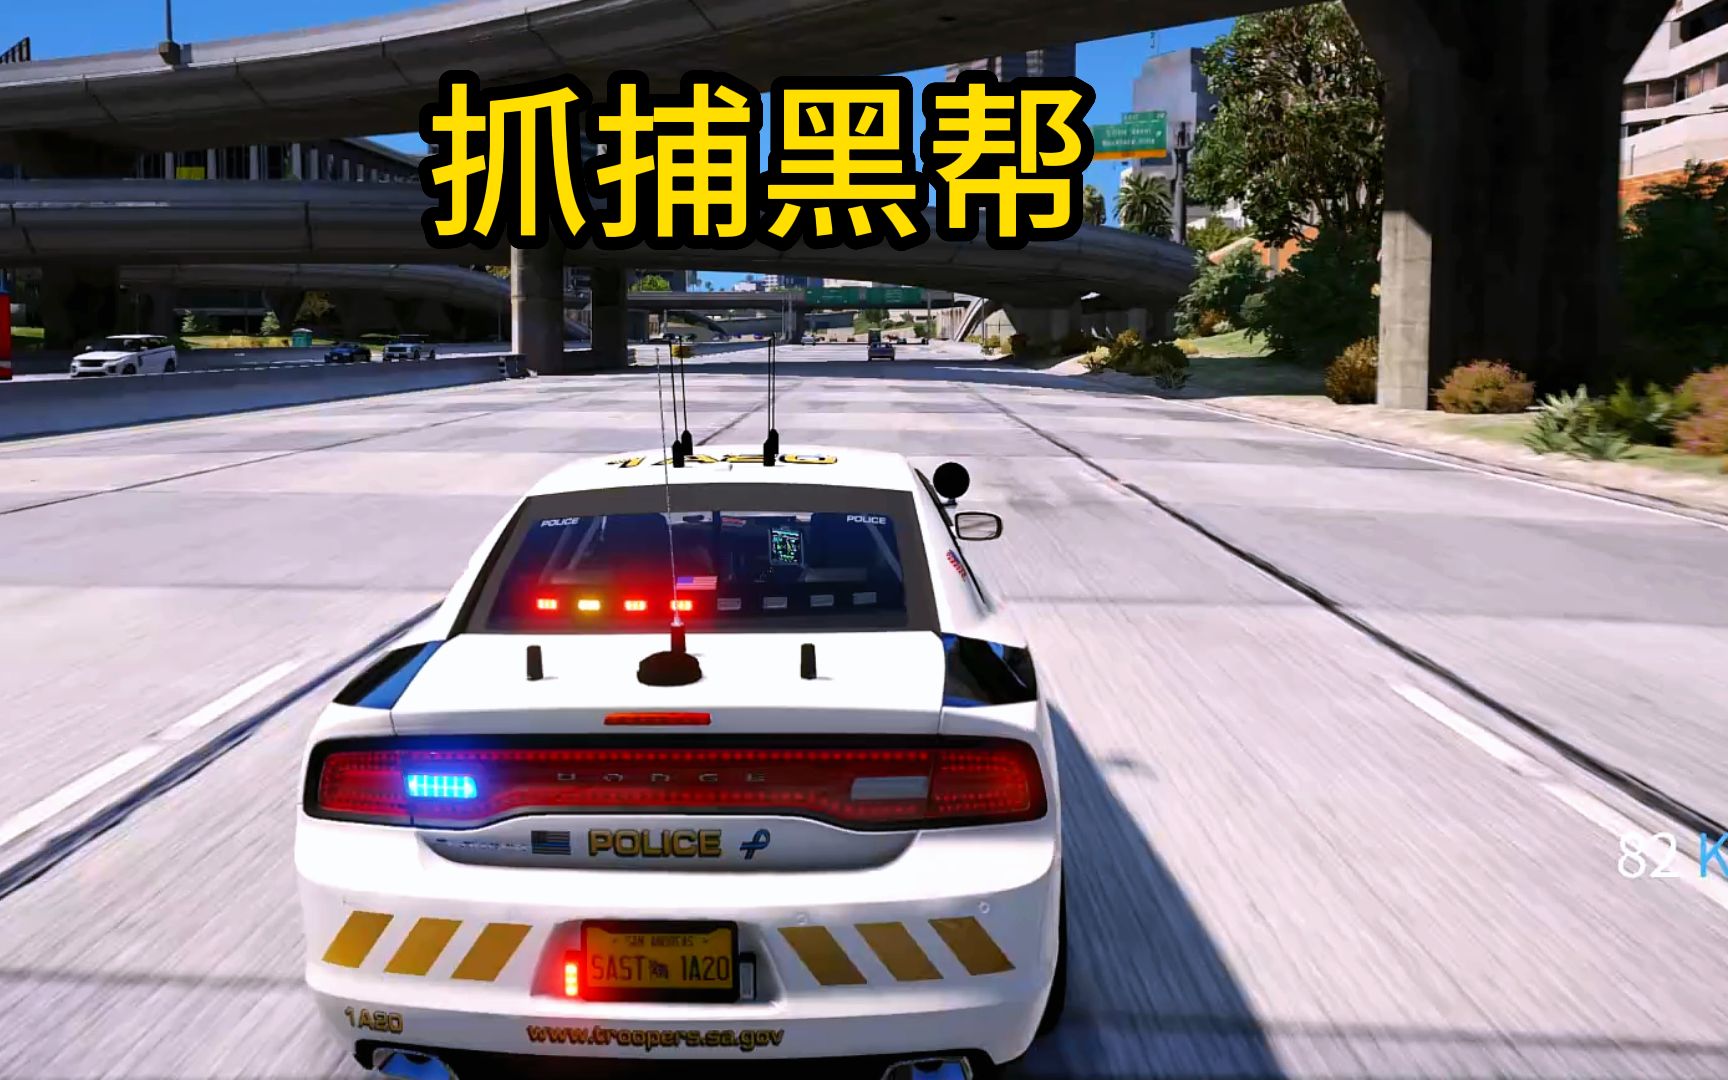 日常警察模拟器 追捕黑帮人员 驾车逃离 进行追捕截停